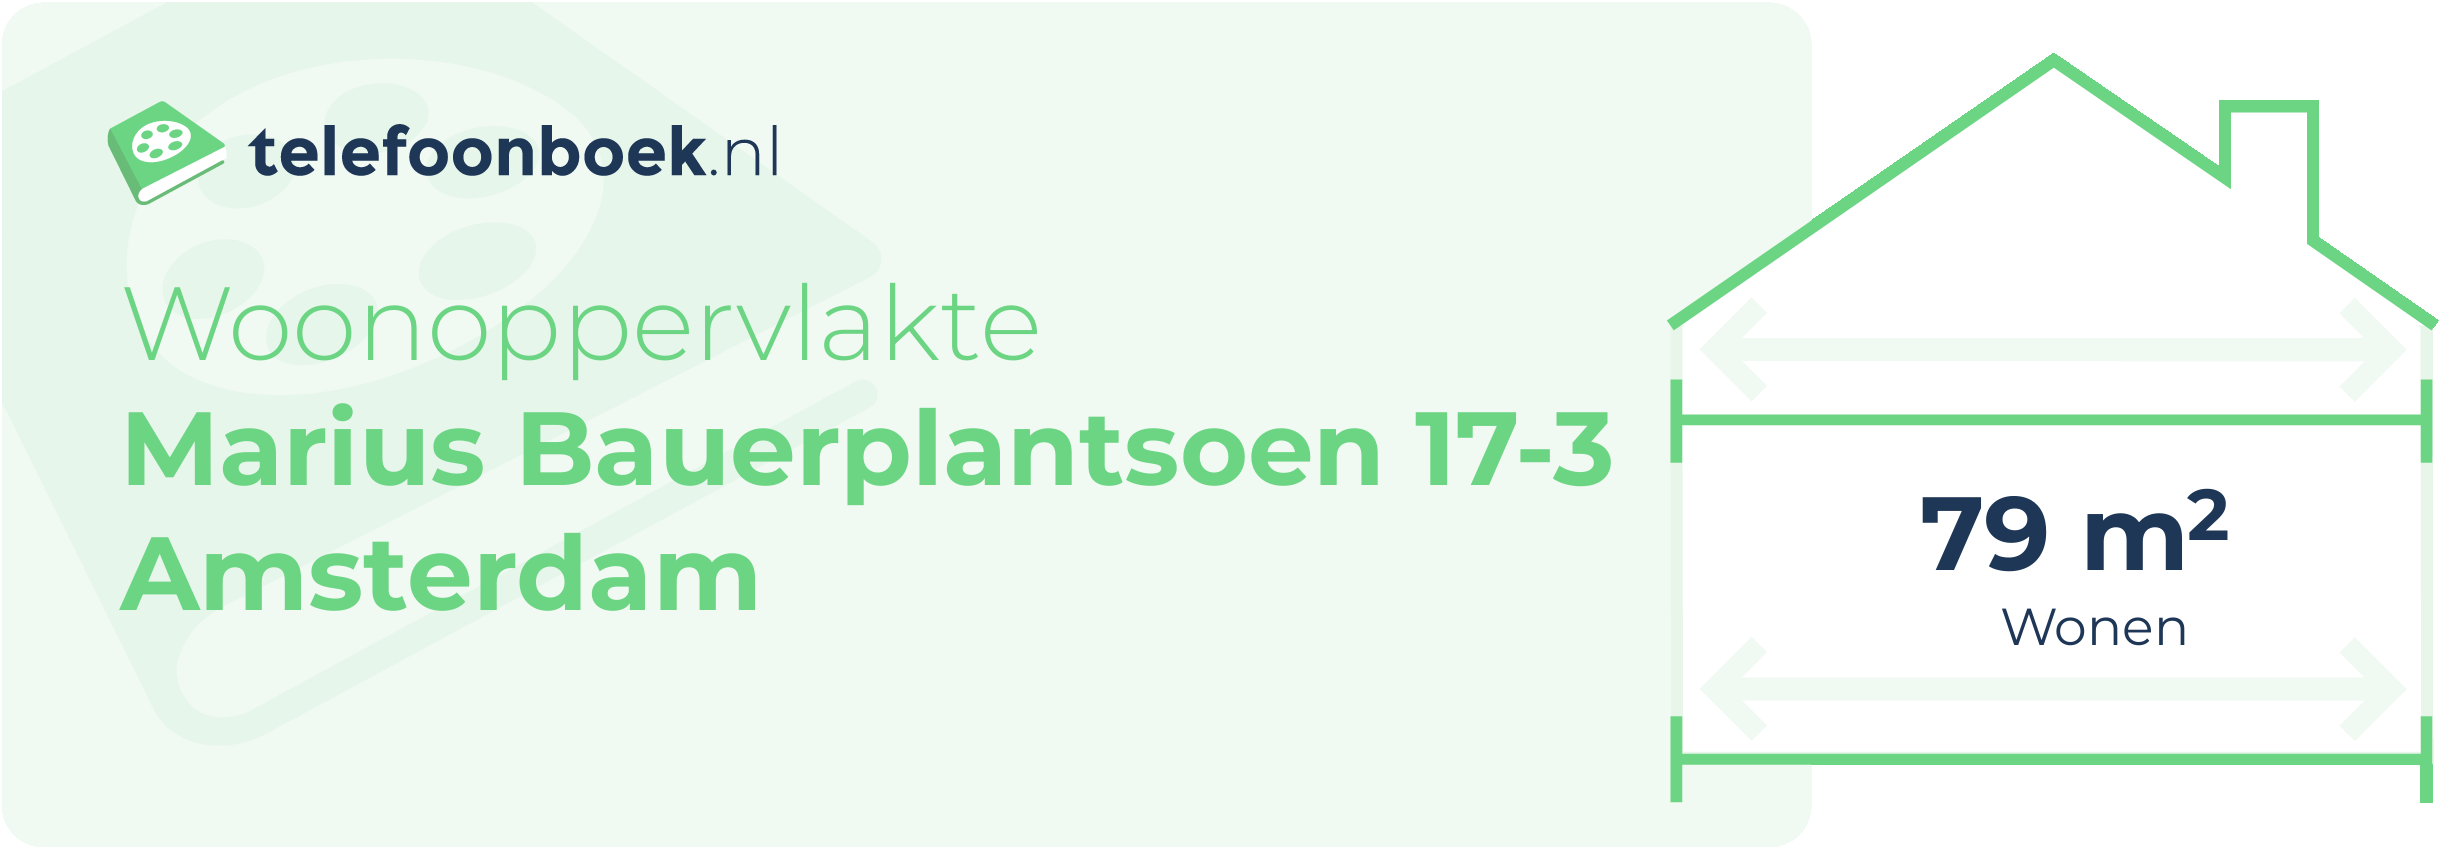 Woonoppervlakte Marius Bauerplantsoen 17-3 Amsterdam